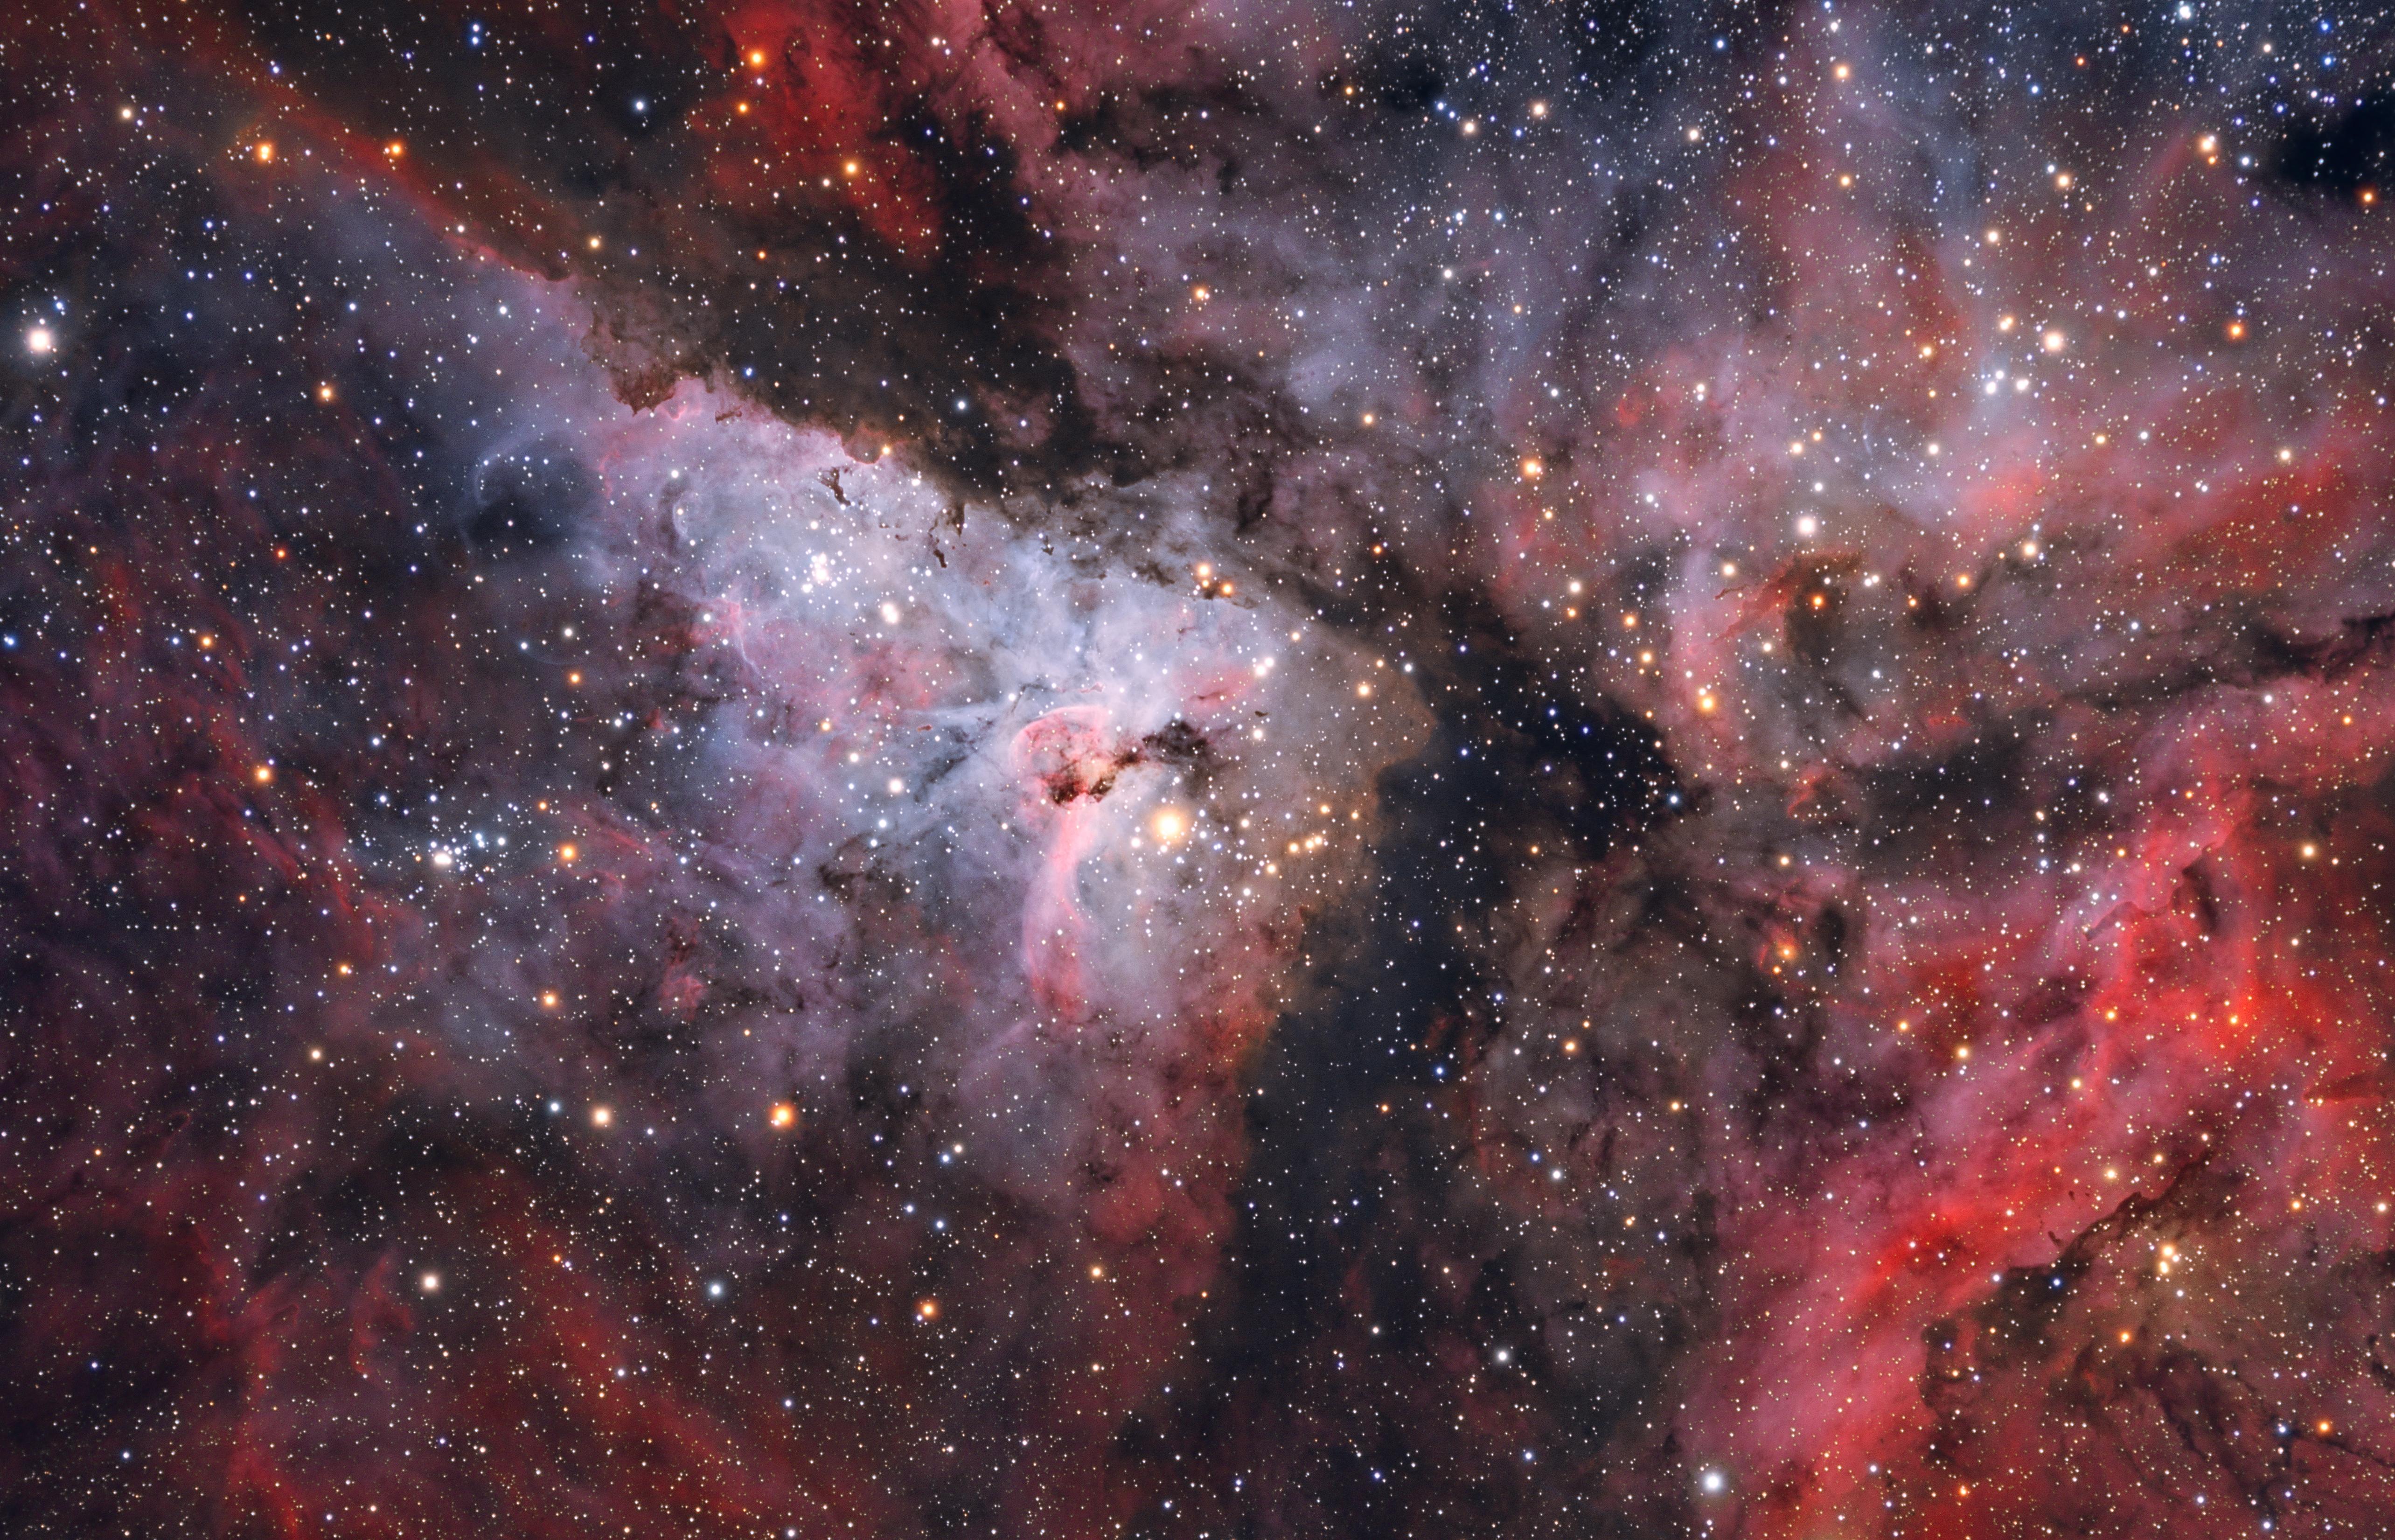 APOD - The Great Carina Nebula - 2018-12-27 - APOD - Astronomia